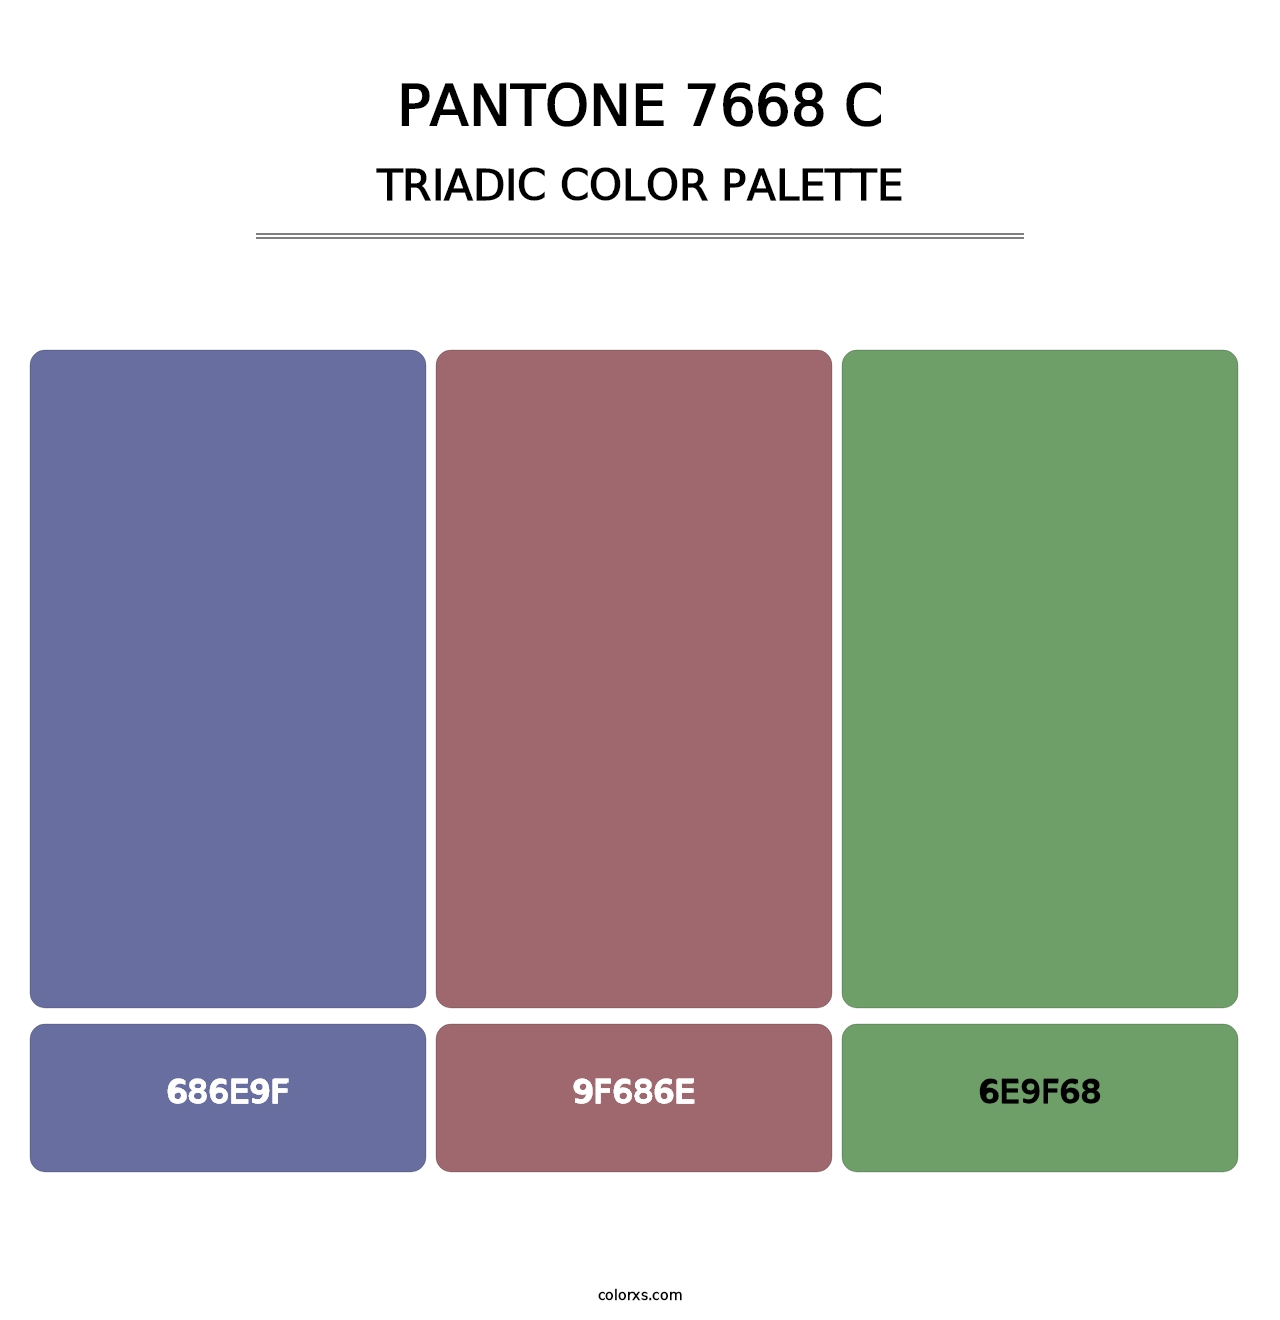 PANTONE 7668 C - Triadic Color Palette